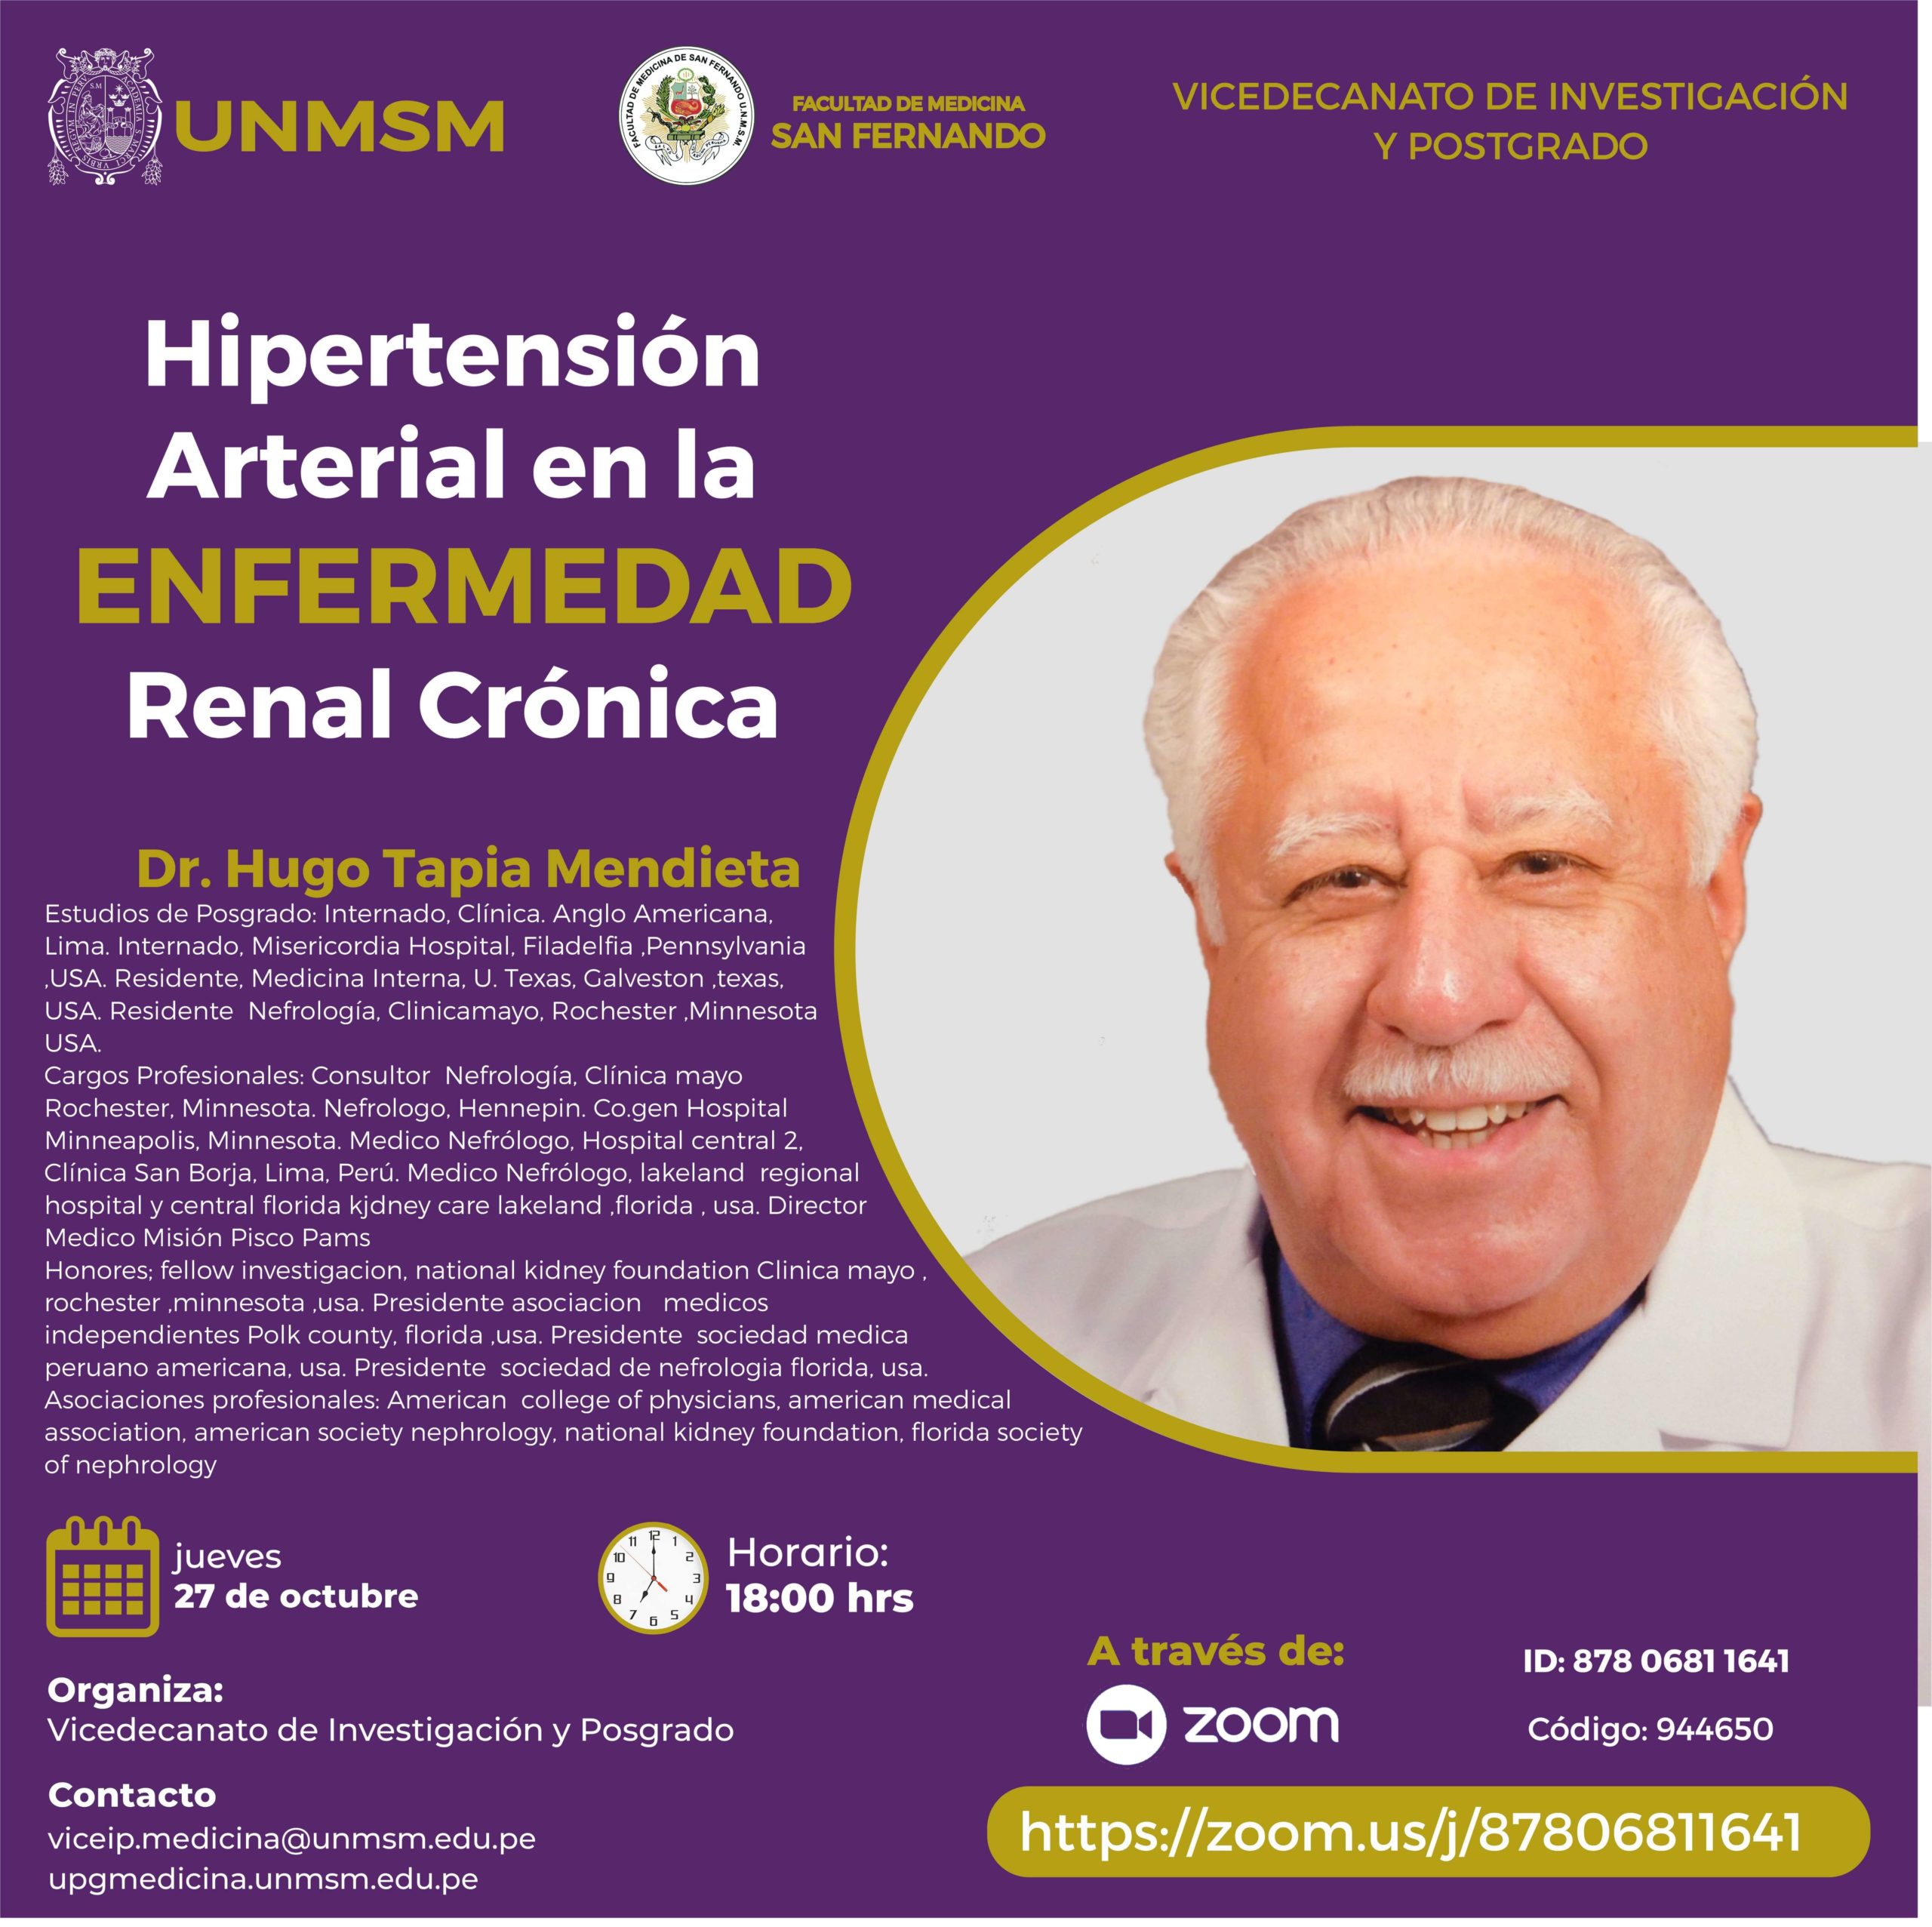 Hipertensión Arterial en la Enfermedad Renal Crónica